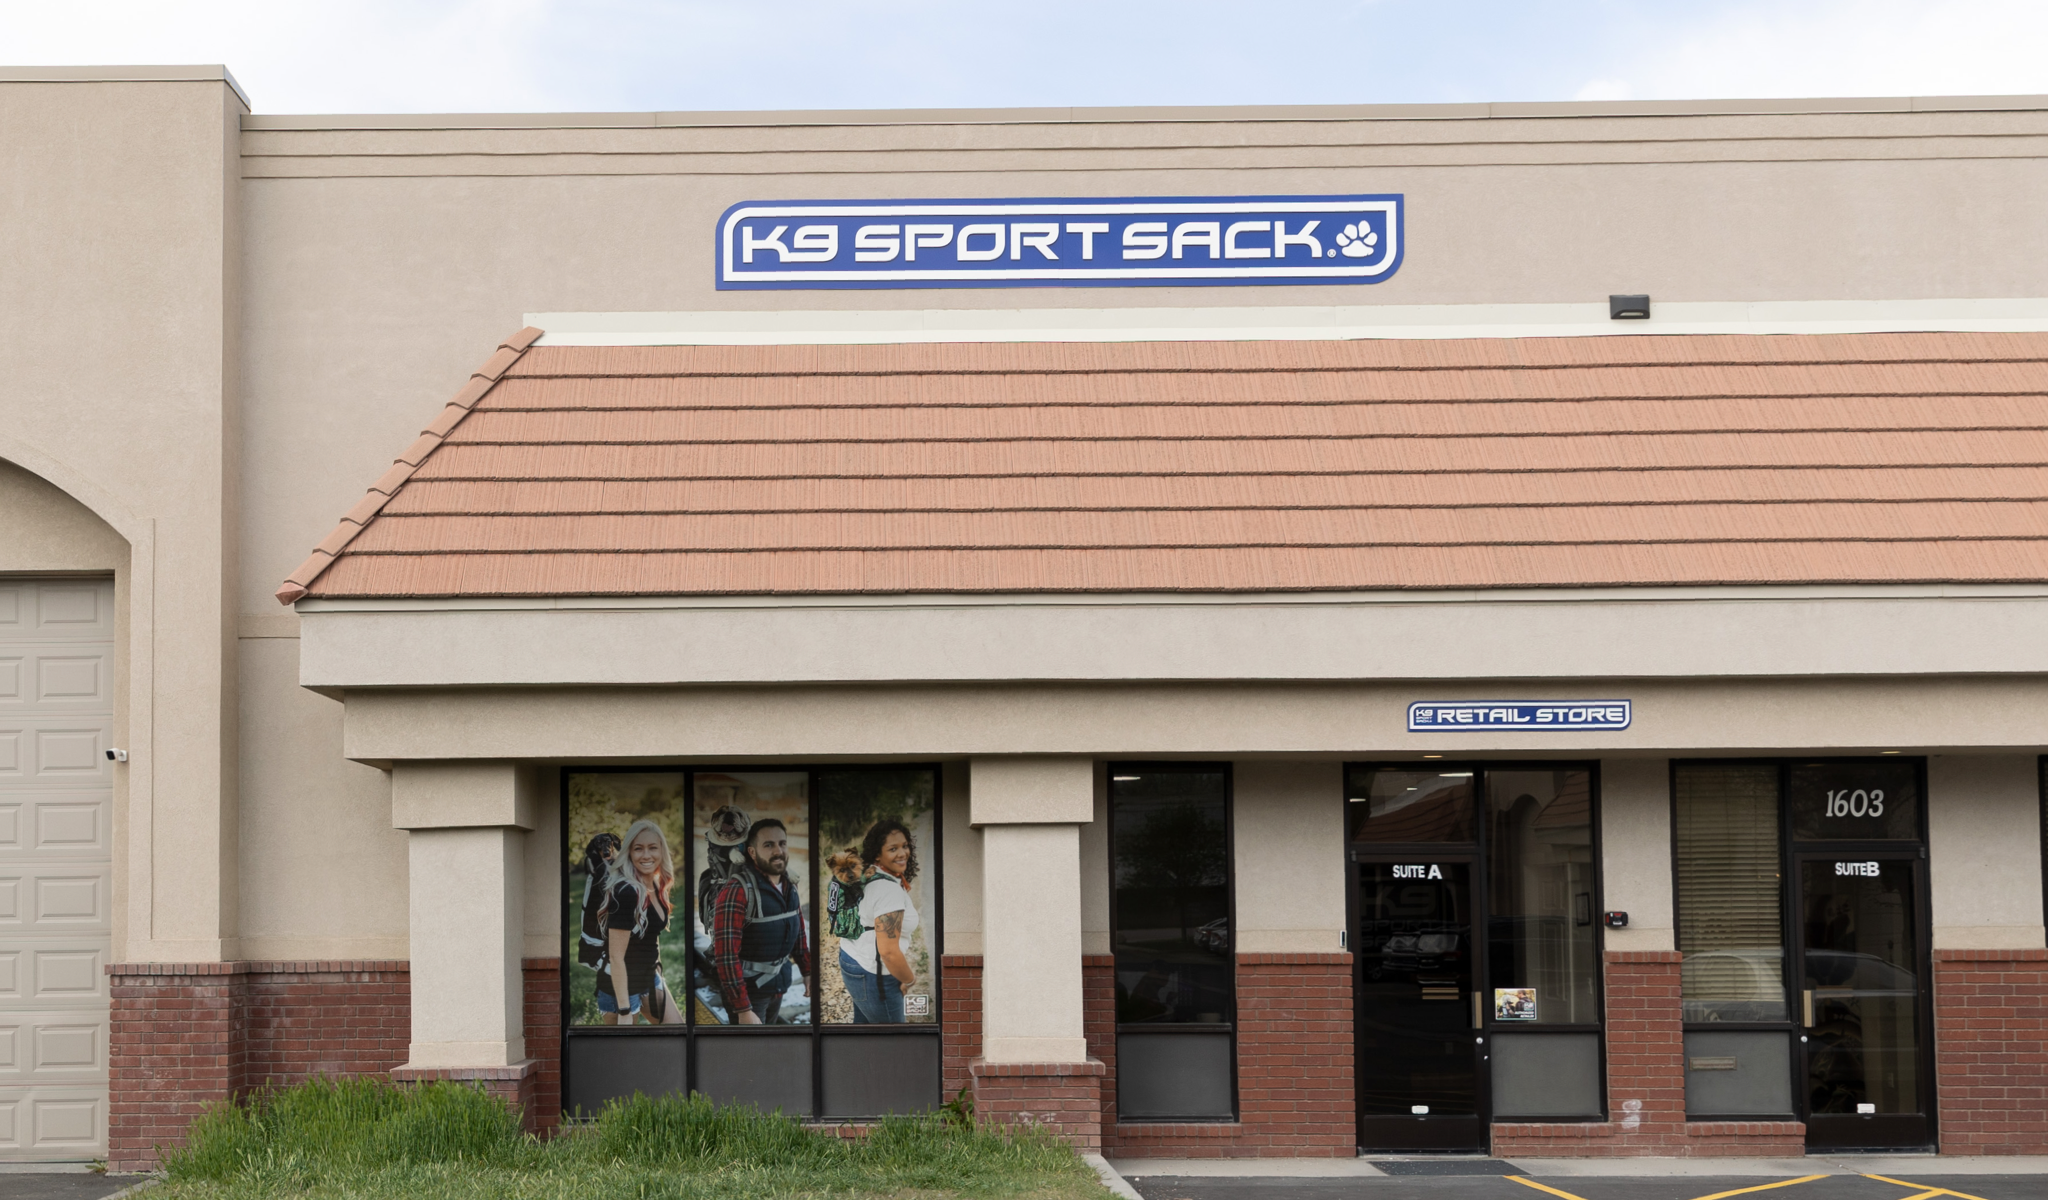 K9 Sport Sack storefront